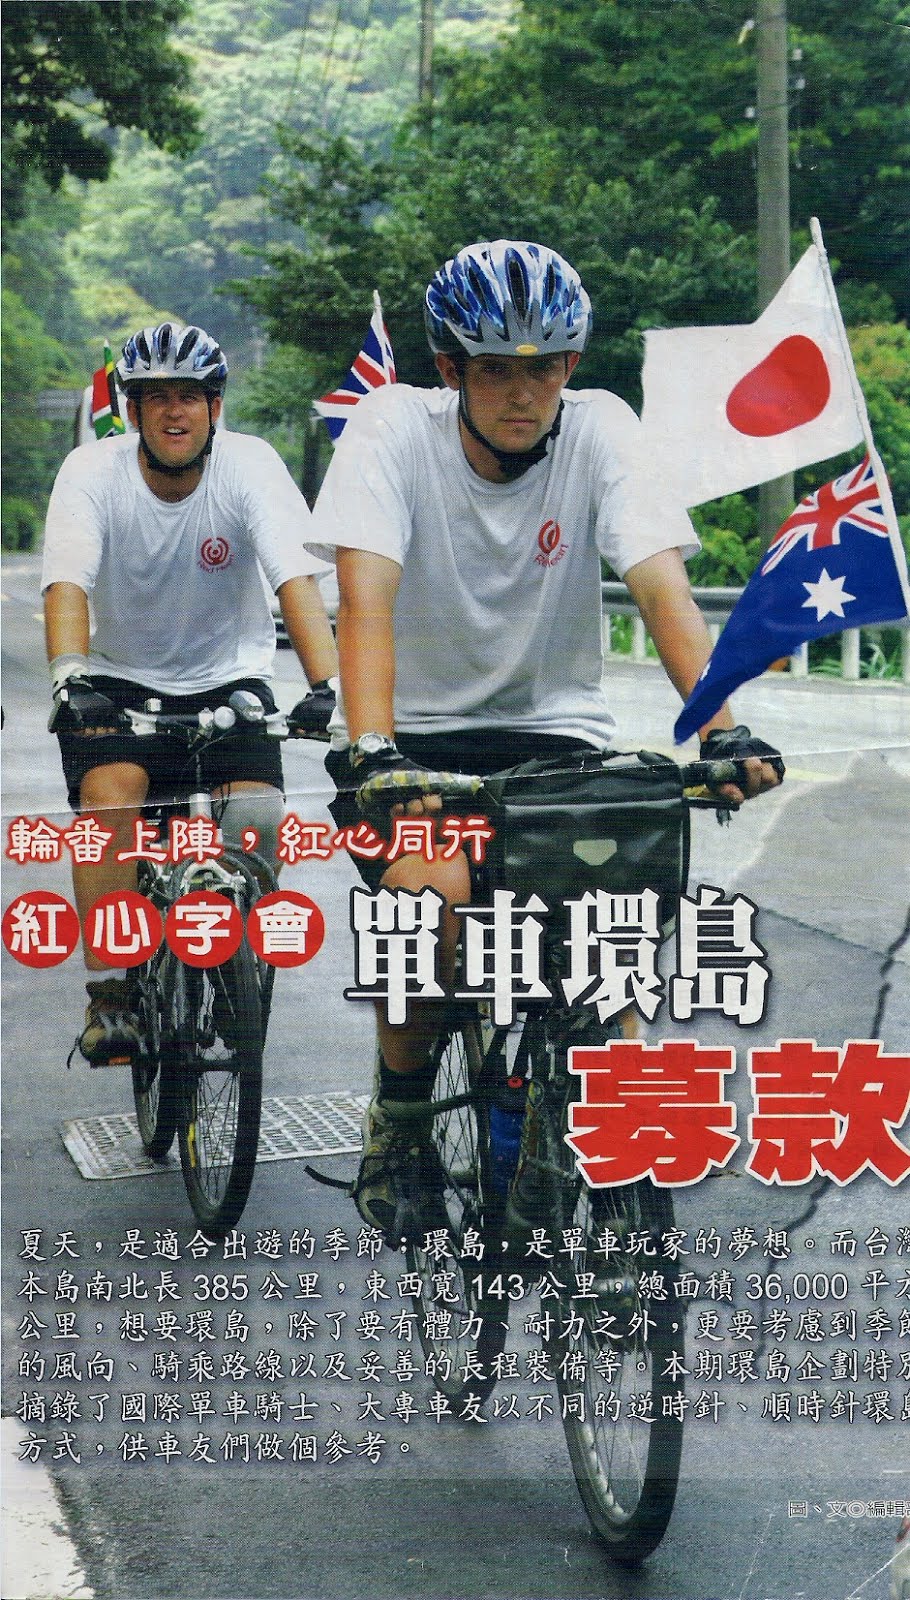 Taiwan 2004